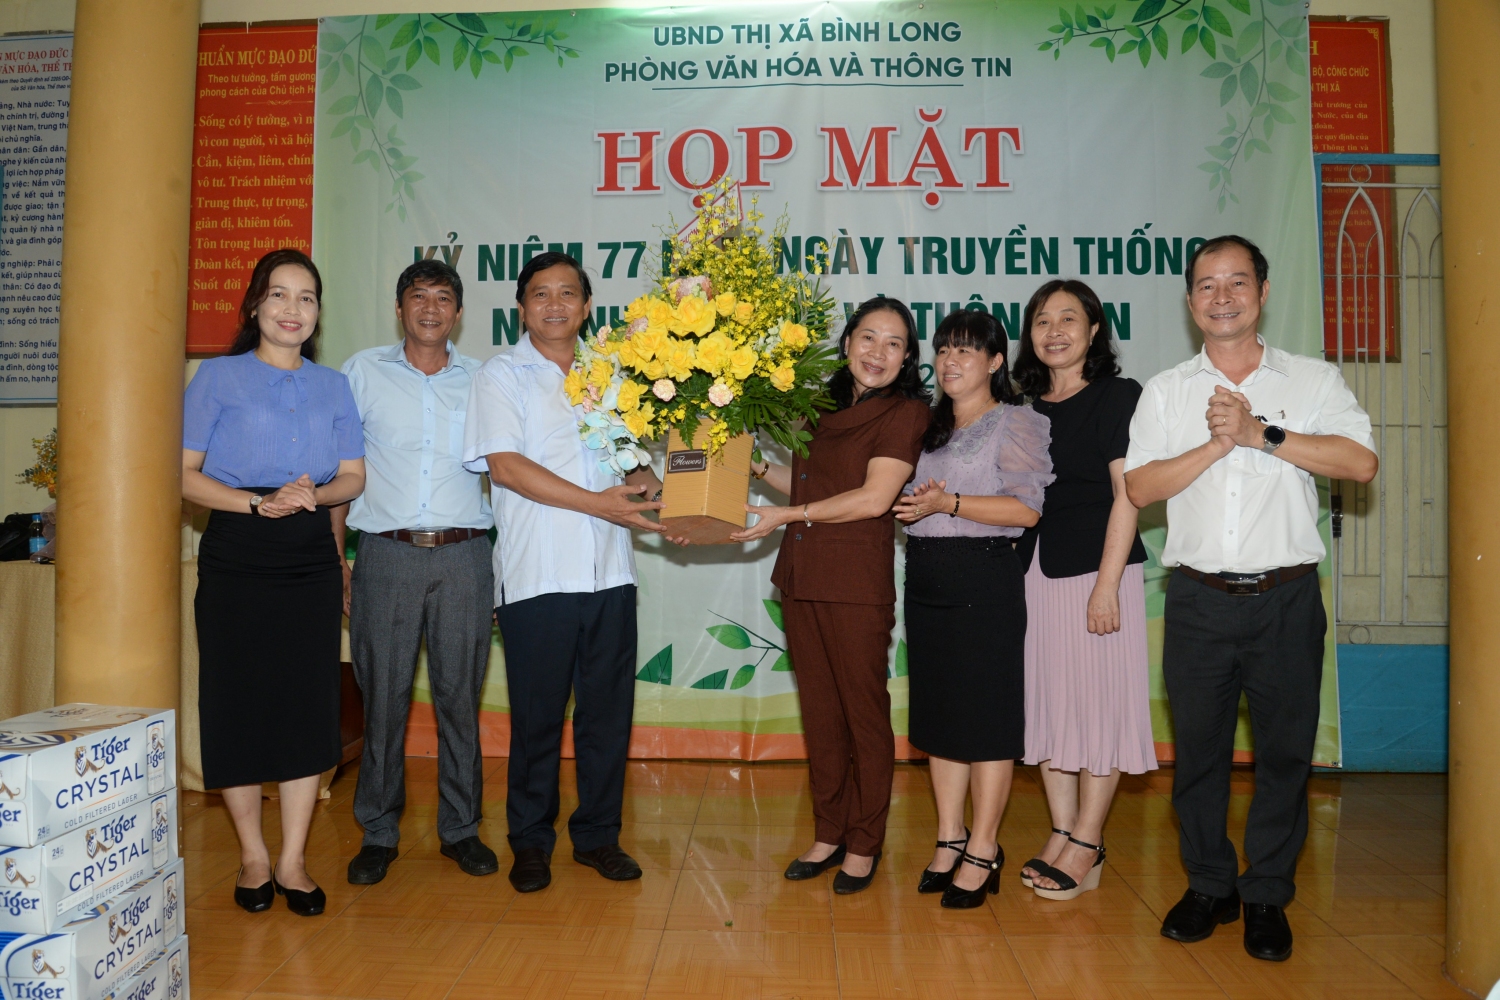 Bà Hoàng Thị Hồng Vân - P.Bí thư, Chủ tịch UBND thị xã Bình Long tặng lẵng hoa chúc mừng Phòng VH&TT trong ngày thành lập Ngành